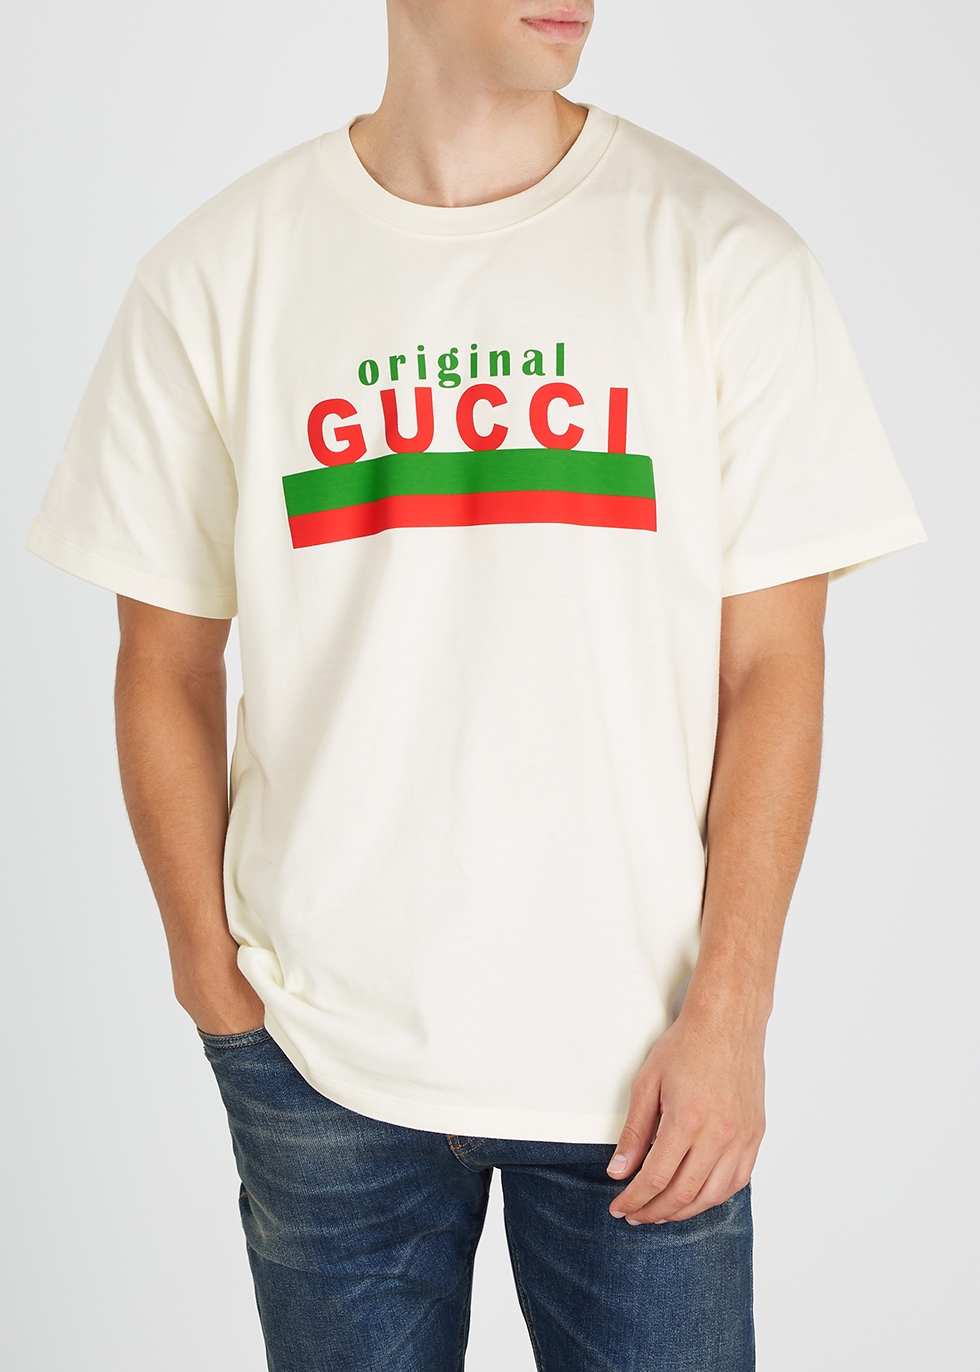 original gucci t shirt